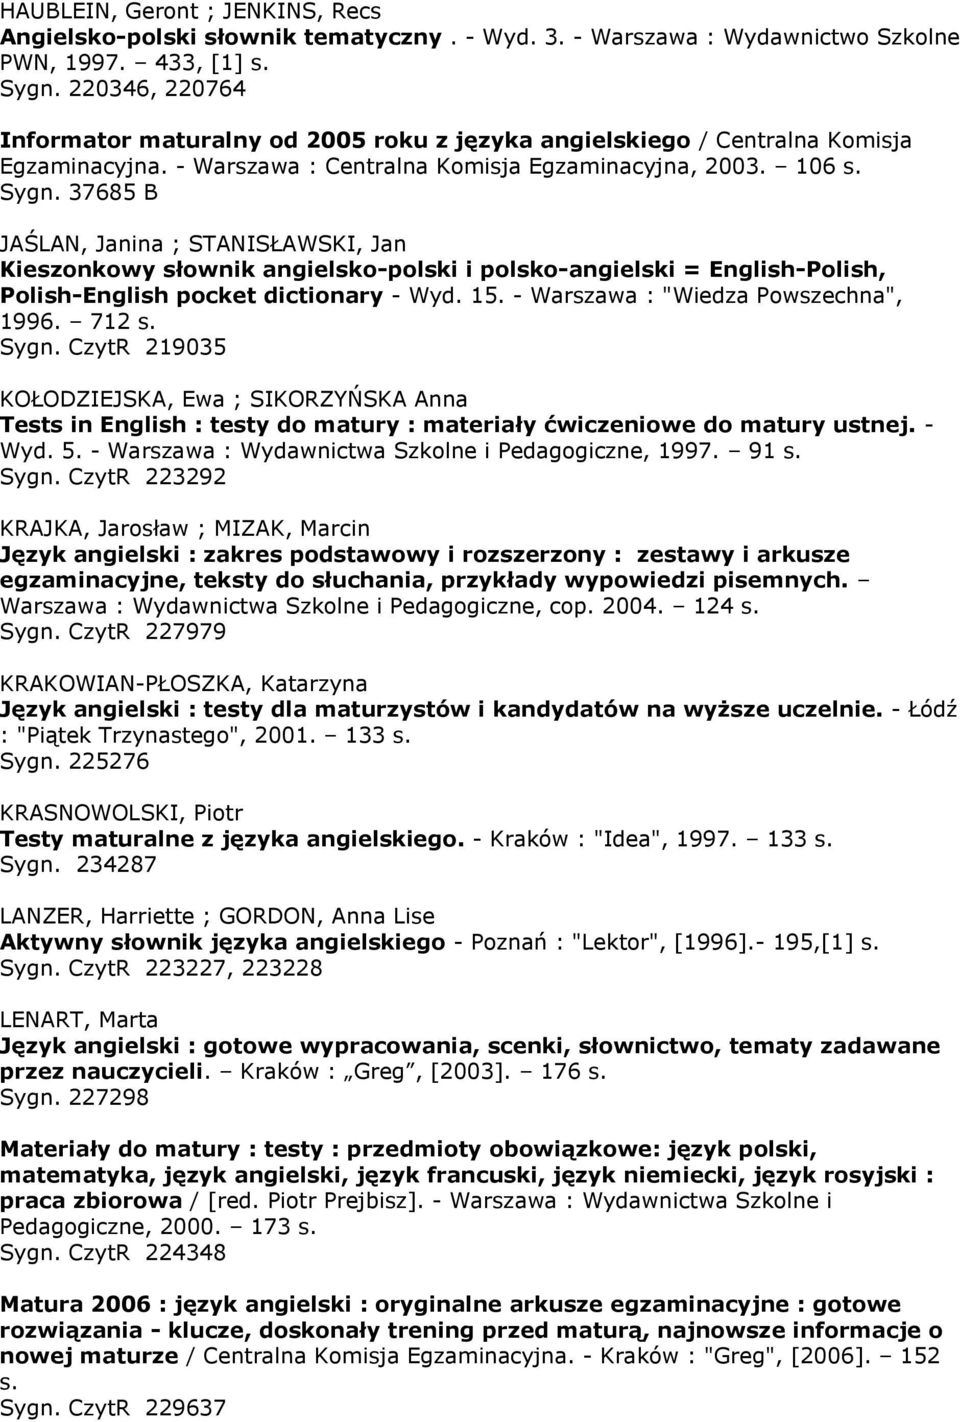 Matura 2012 materiały dla ucznia. Angielski : repetytorium  leksykalno-tematyczne. - Warszawa : "Edgard", s. Sygn. - PDF Free Download